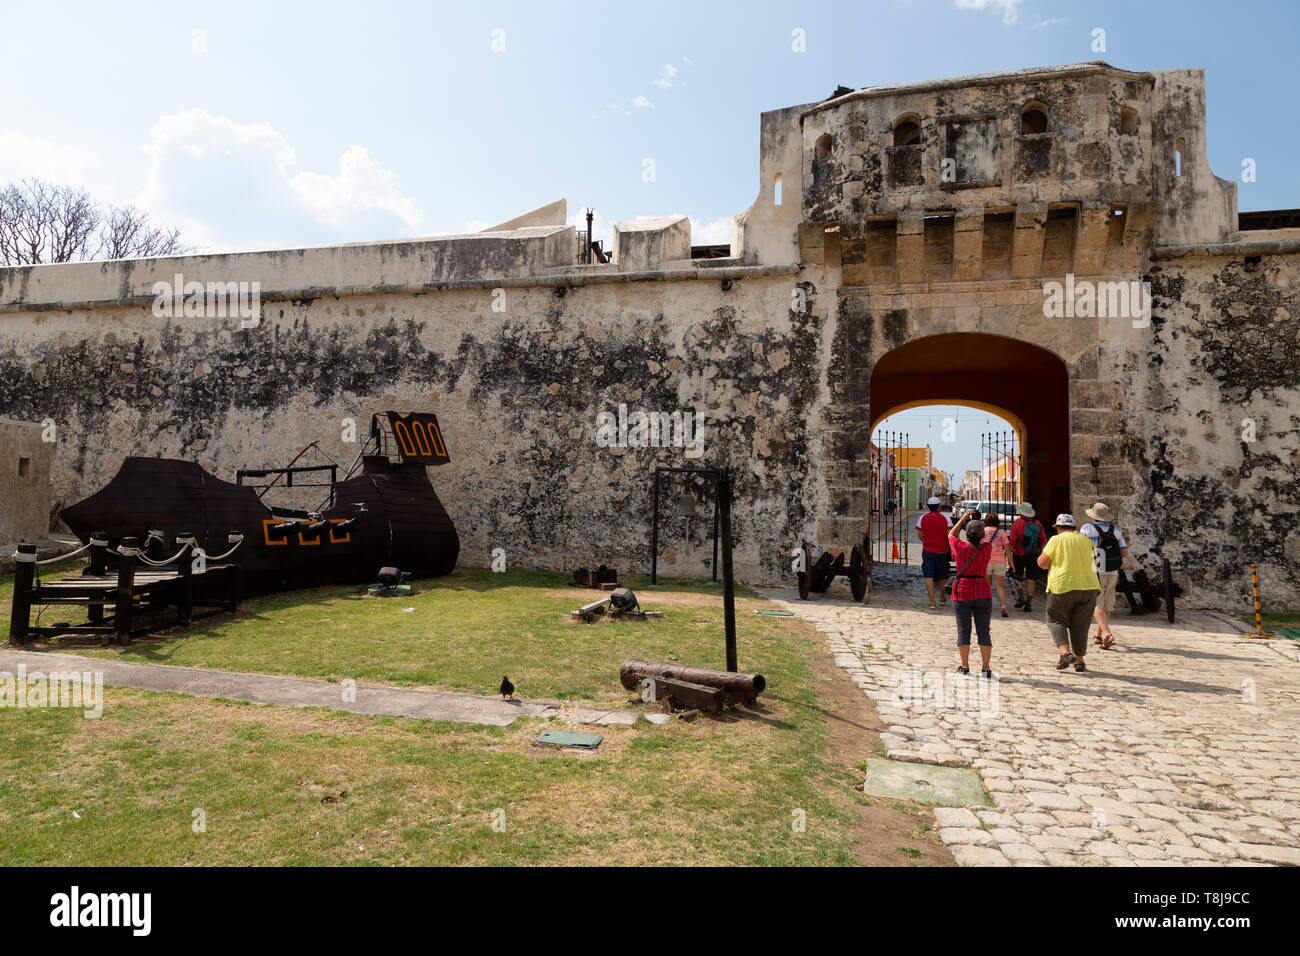 La Terre, la porte d'entrée vers les fortifications de la vieille ville de Campeche UNESCO World Heritage site, Campeche, Yucatan, Mexique Amérique Latine Banque D'Images